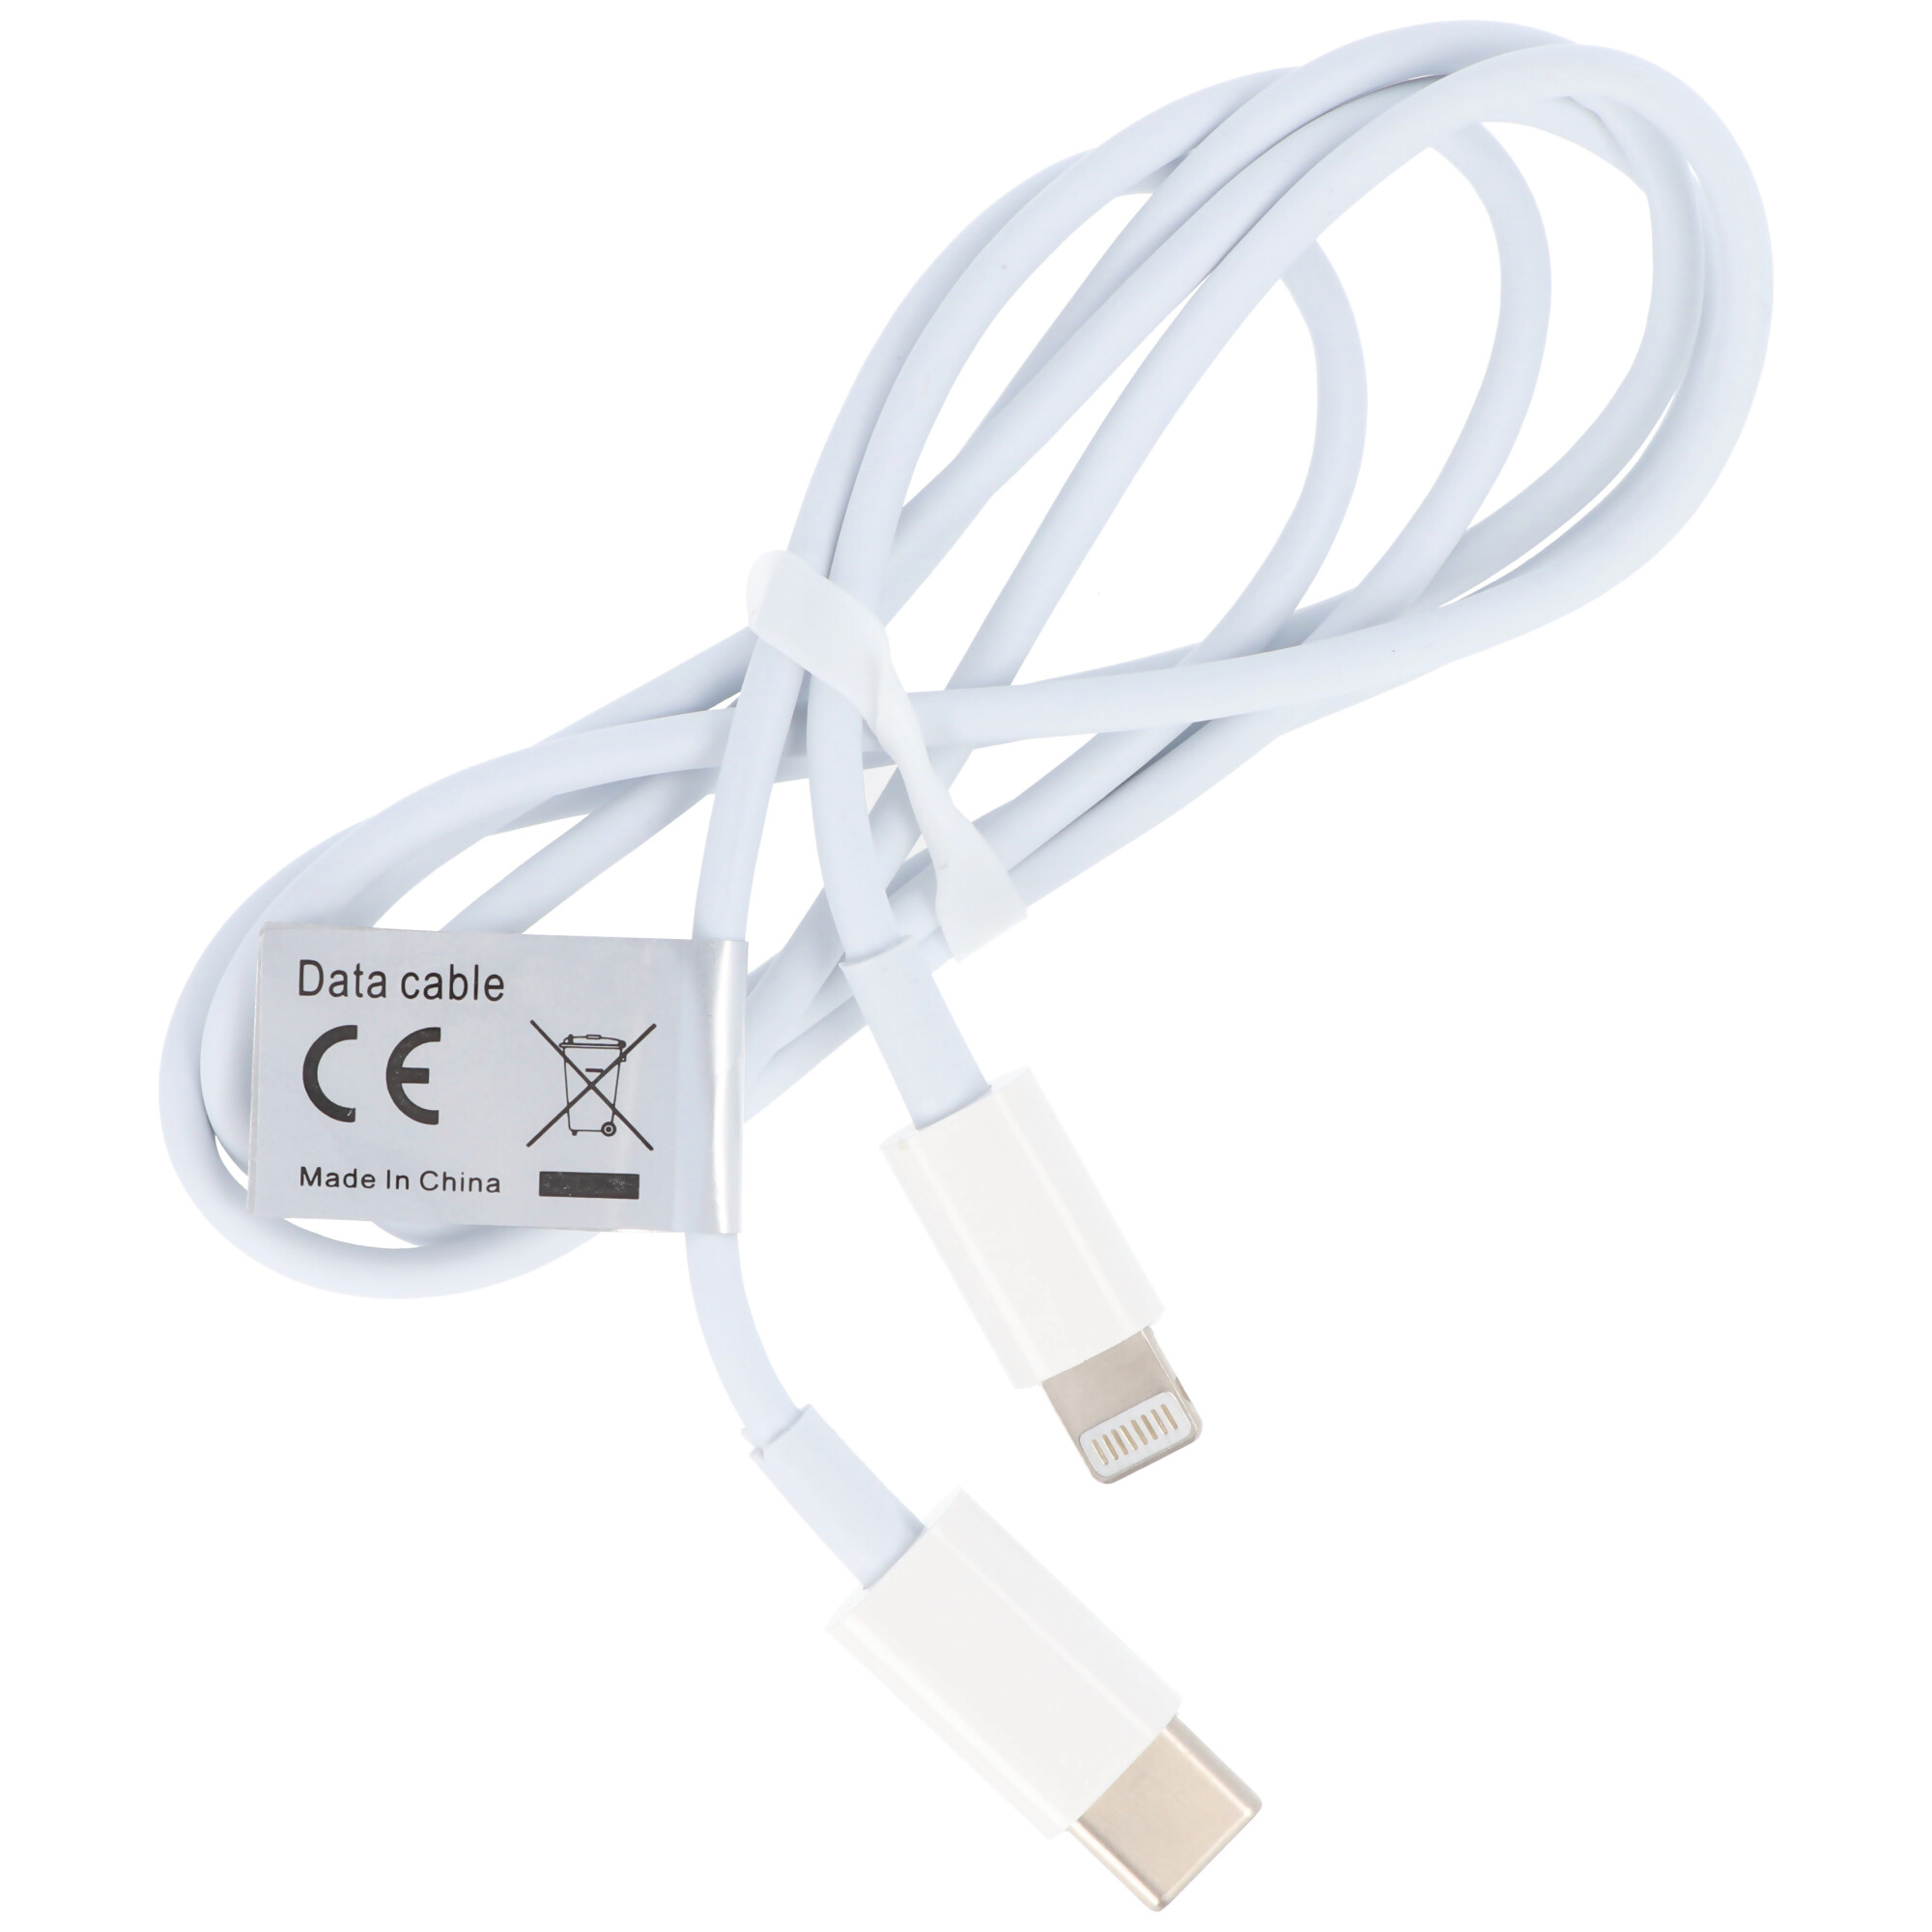 USB-C Datenkabel passend für USB TYPE C USB-C auf iPhone Weiss für iPhone 11, 12, X, XS, XR